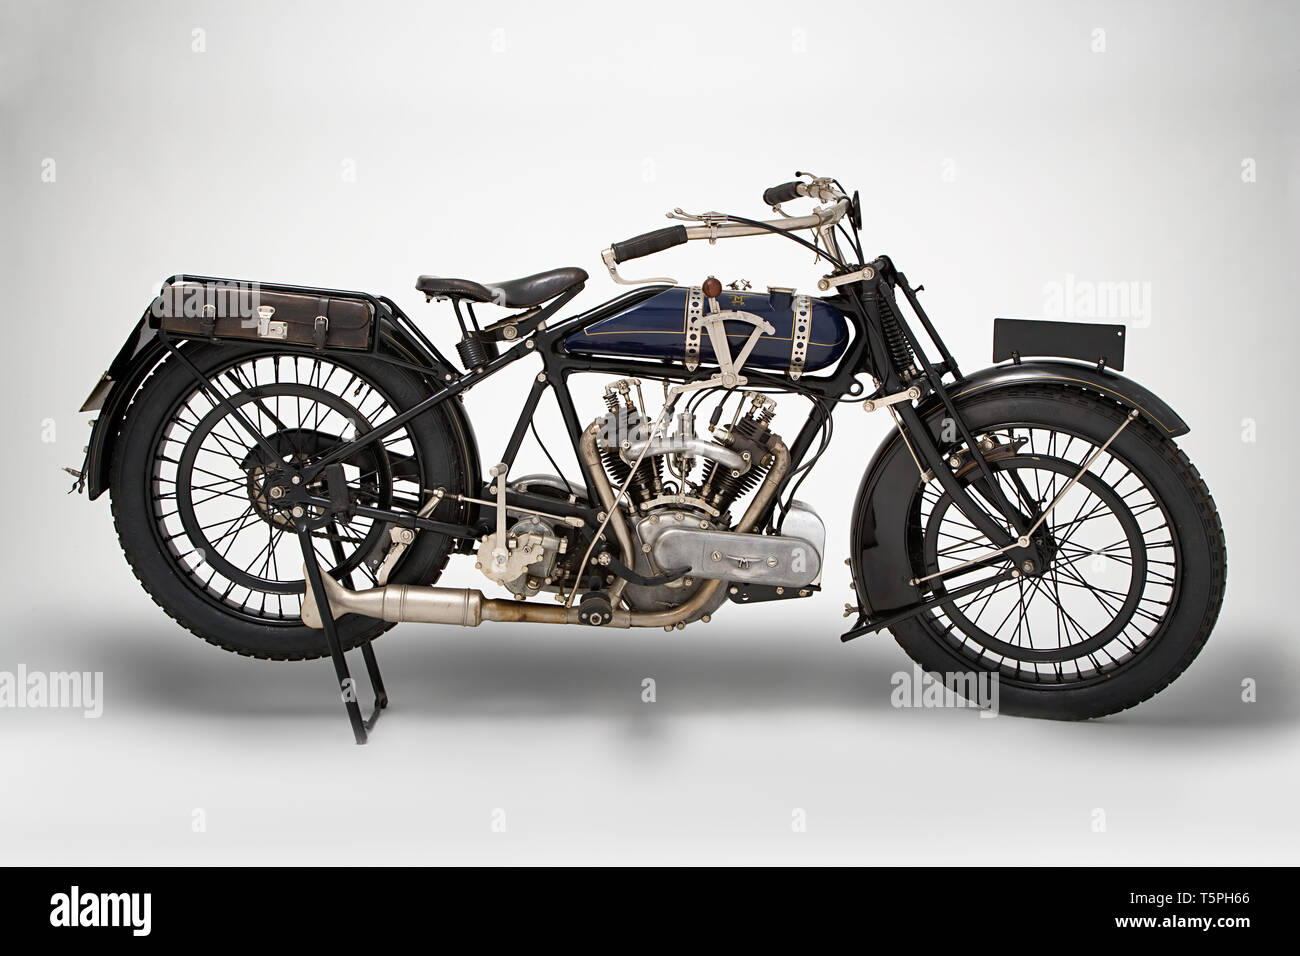 Moto d'epoca Martinsyde 500 Sport Marca: Martinsyde modello: 500 Sport nazione: Regno Unito - Woking Anno: 1922 condizioni: wäs Stockfoto